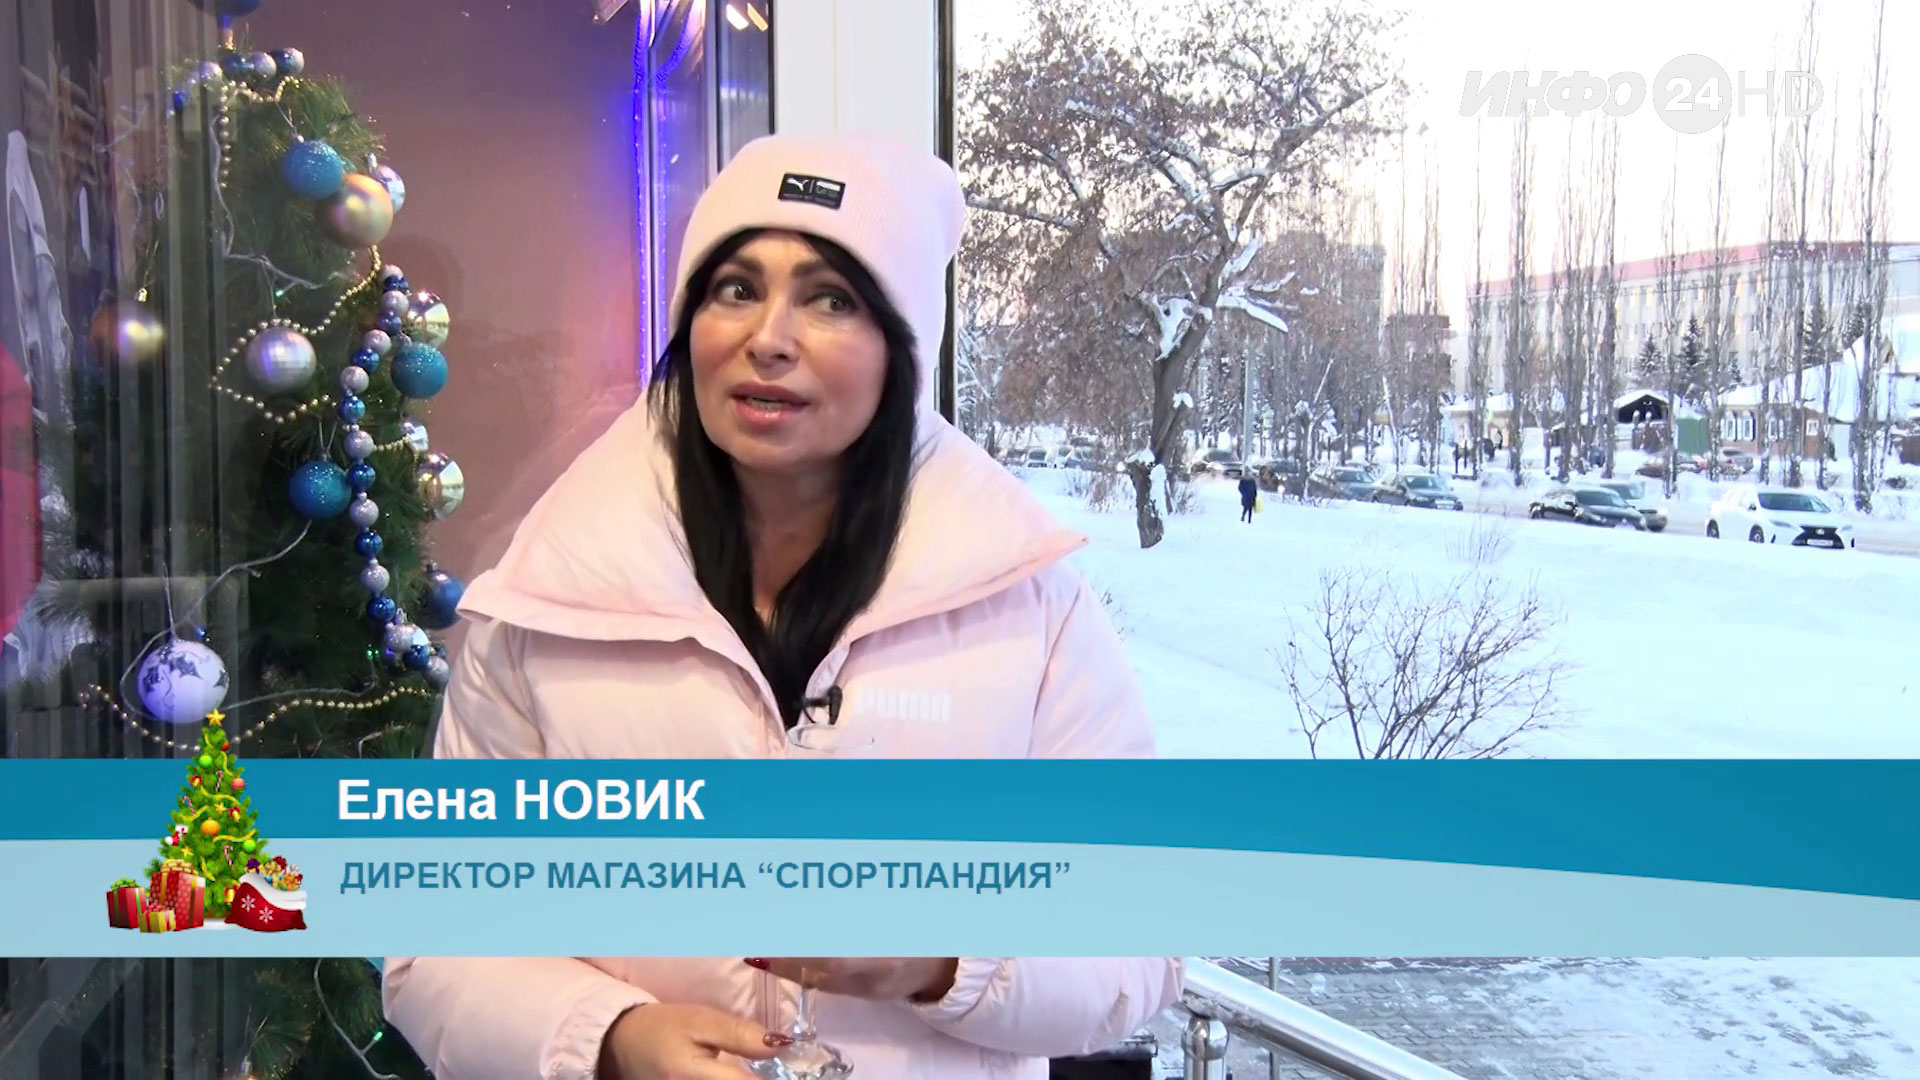 Новогоднее поздравление - 2022. Елена Новик, директор магазина "Спортландия"